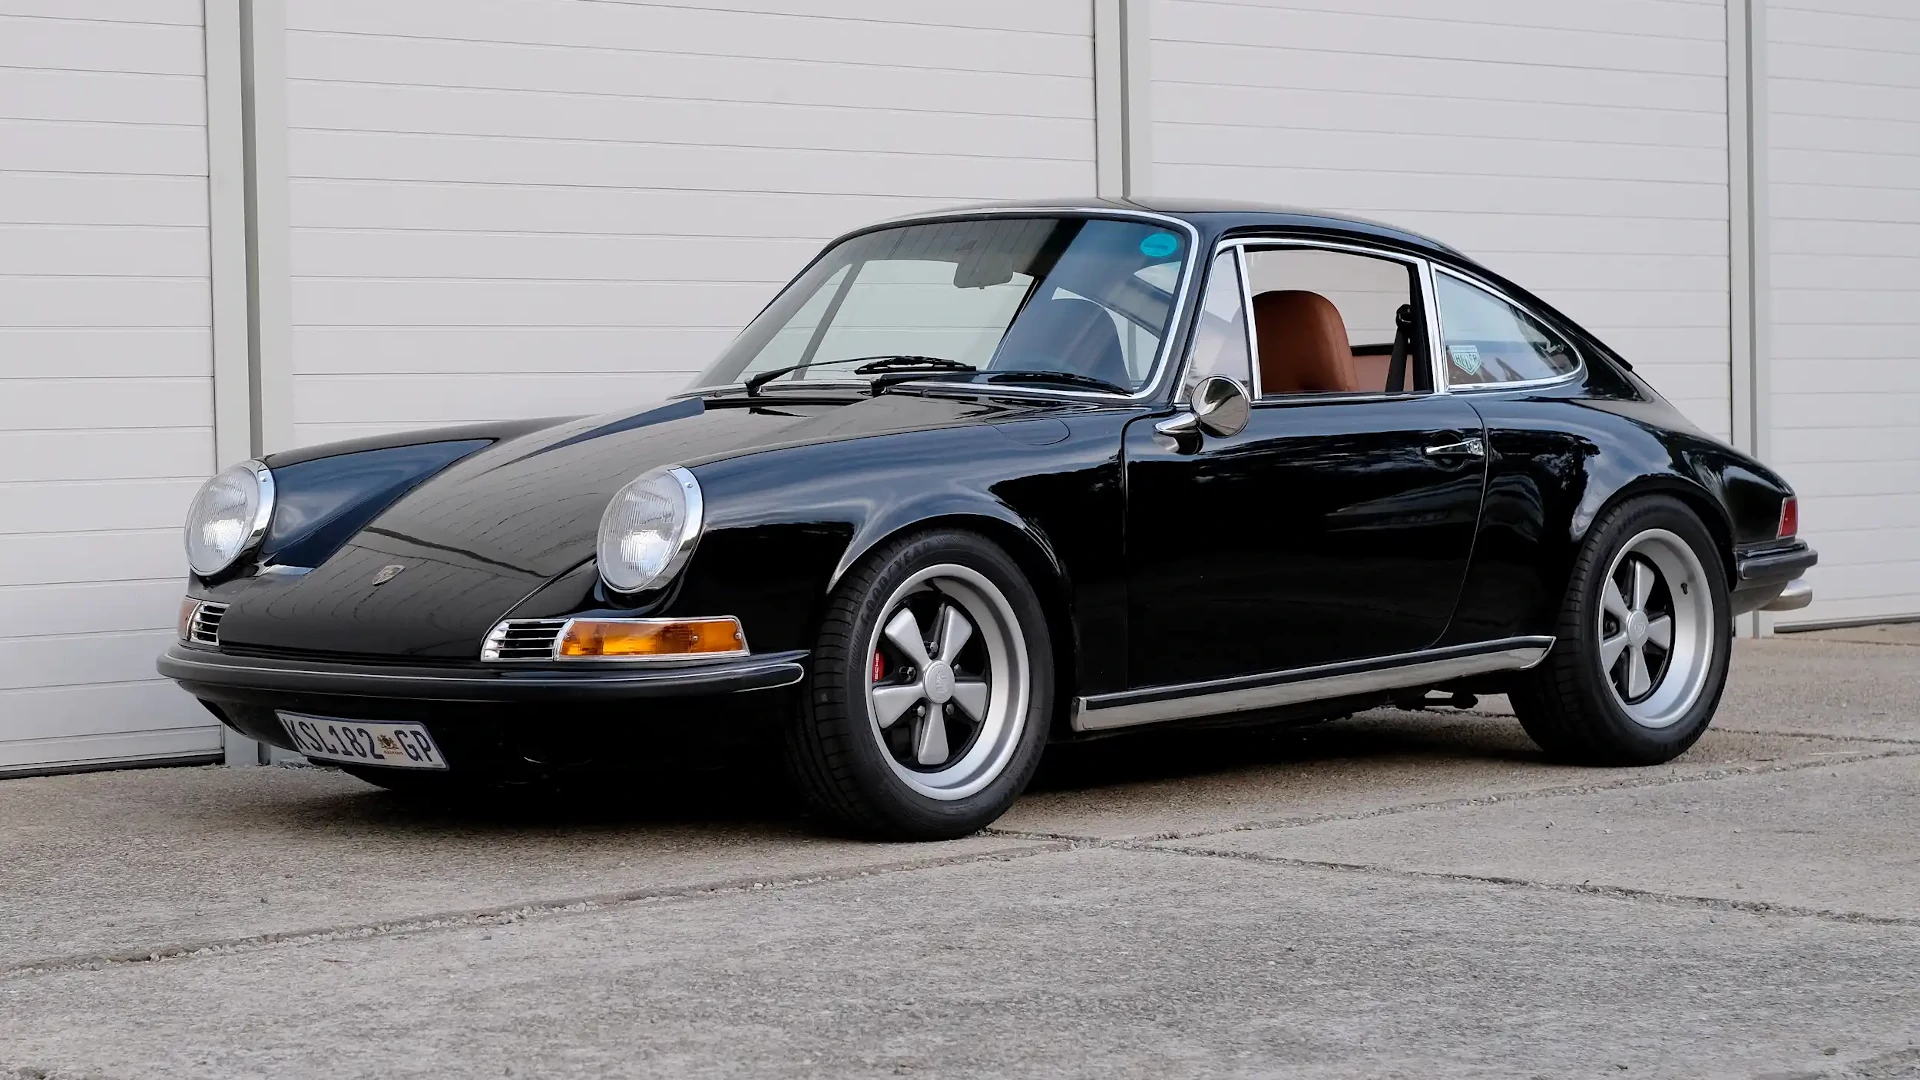 Si quieres un Porsche restomod con clase y auténtico, Dutchmann debería ser tu elección